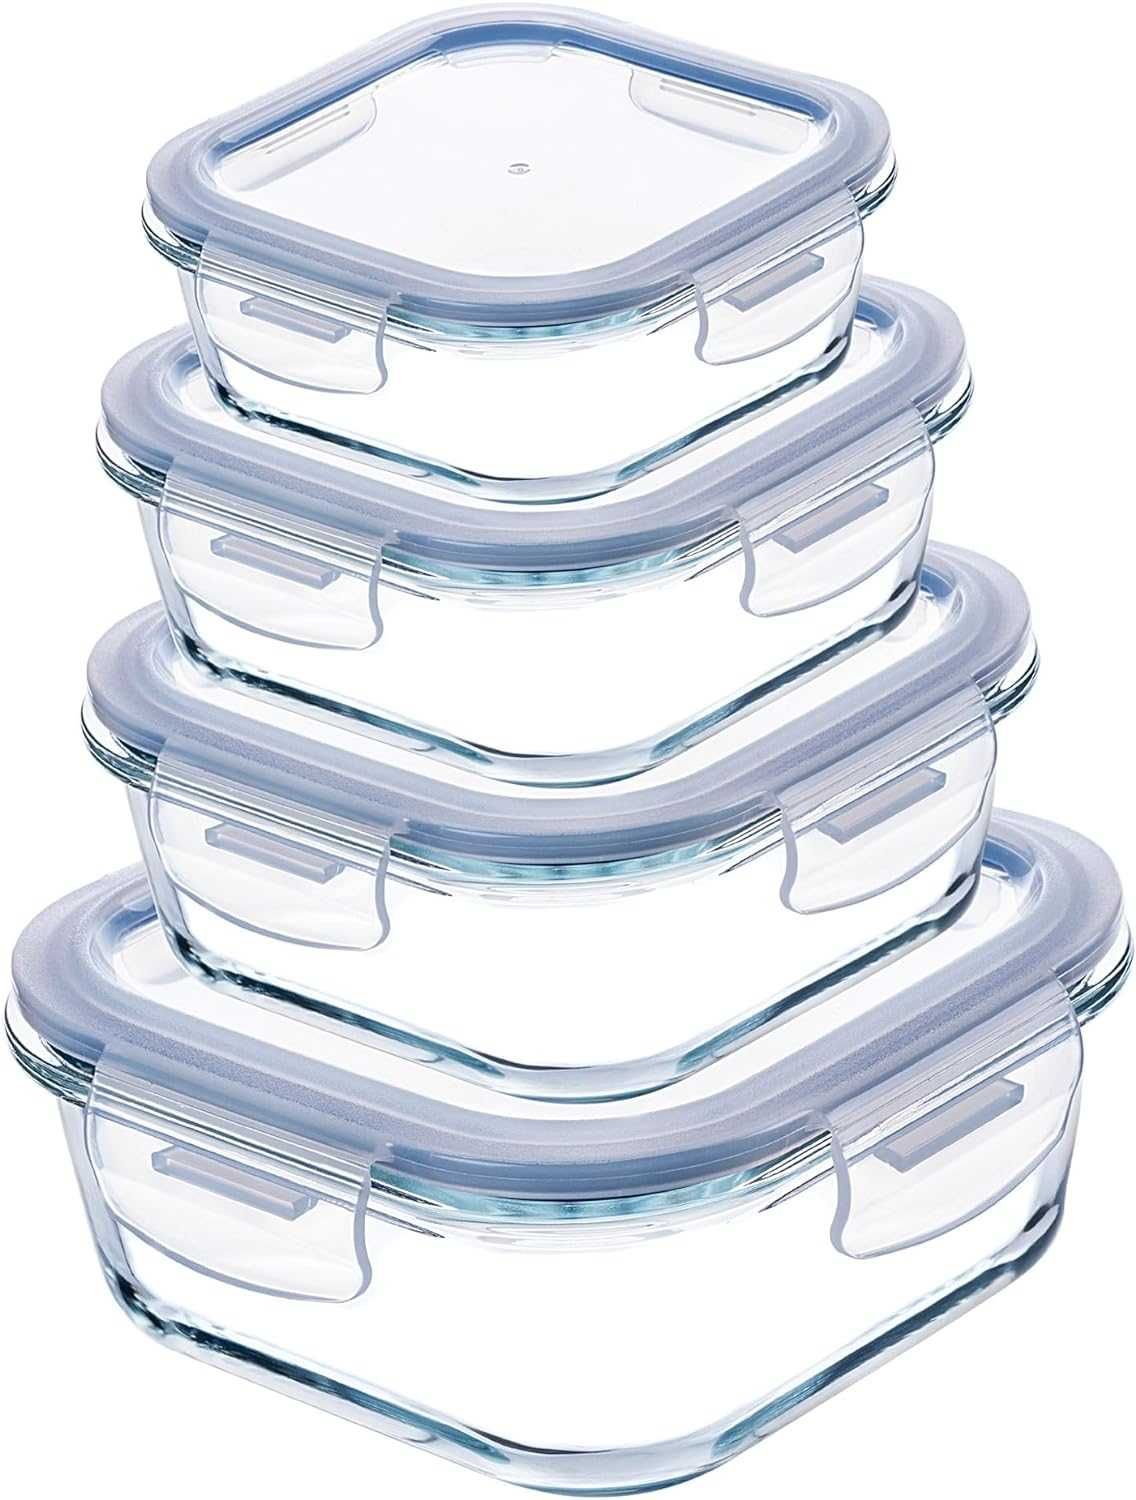 szklane pojemniki do przechowywania żywności zestaw 4 szt